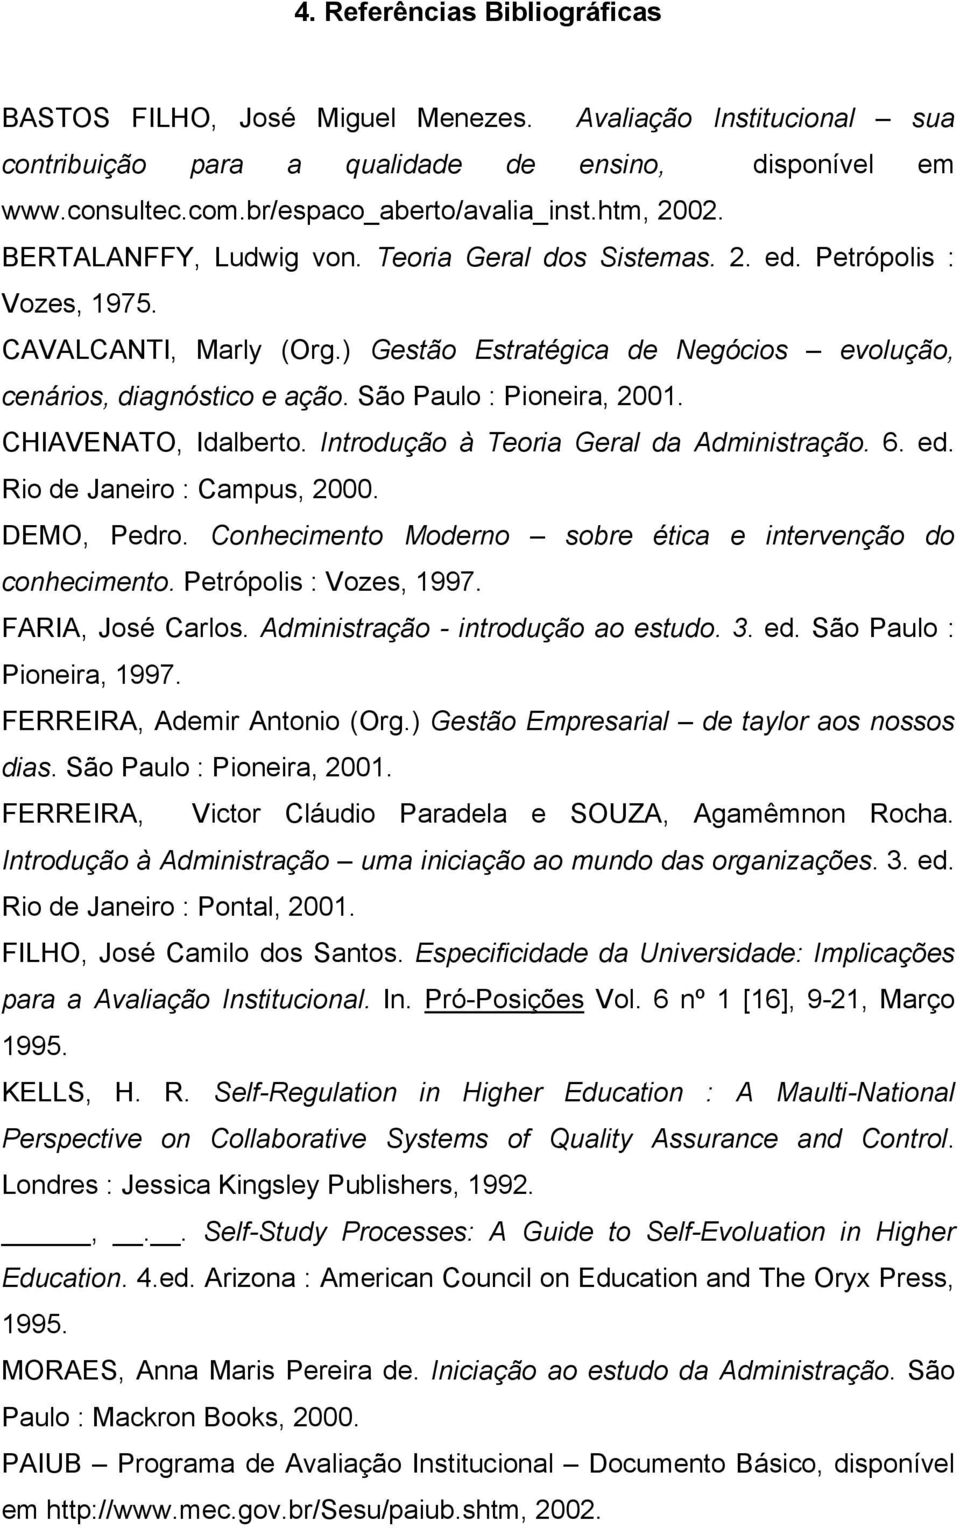 São Paulo : Pioneira, 2001. CHIAVENATO, Idalberto. Introdução à Teoria Geral da Administração. 6. ed. Rio de Janeiro : Campus, 2000. DEMO, Pedro.